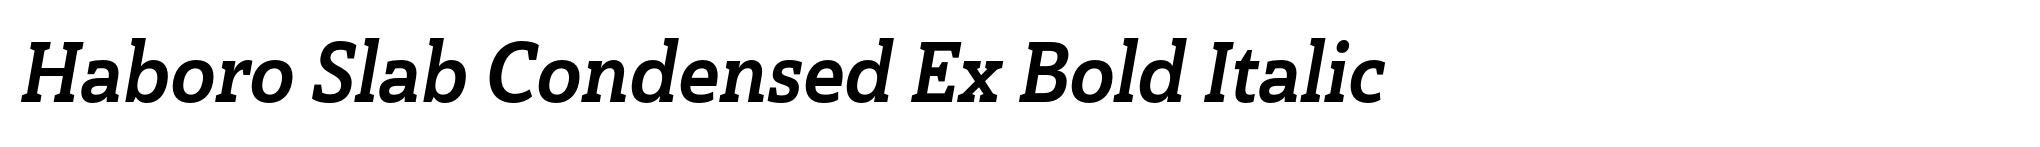 Haboro Slab Condensed Ex Bold Italic image